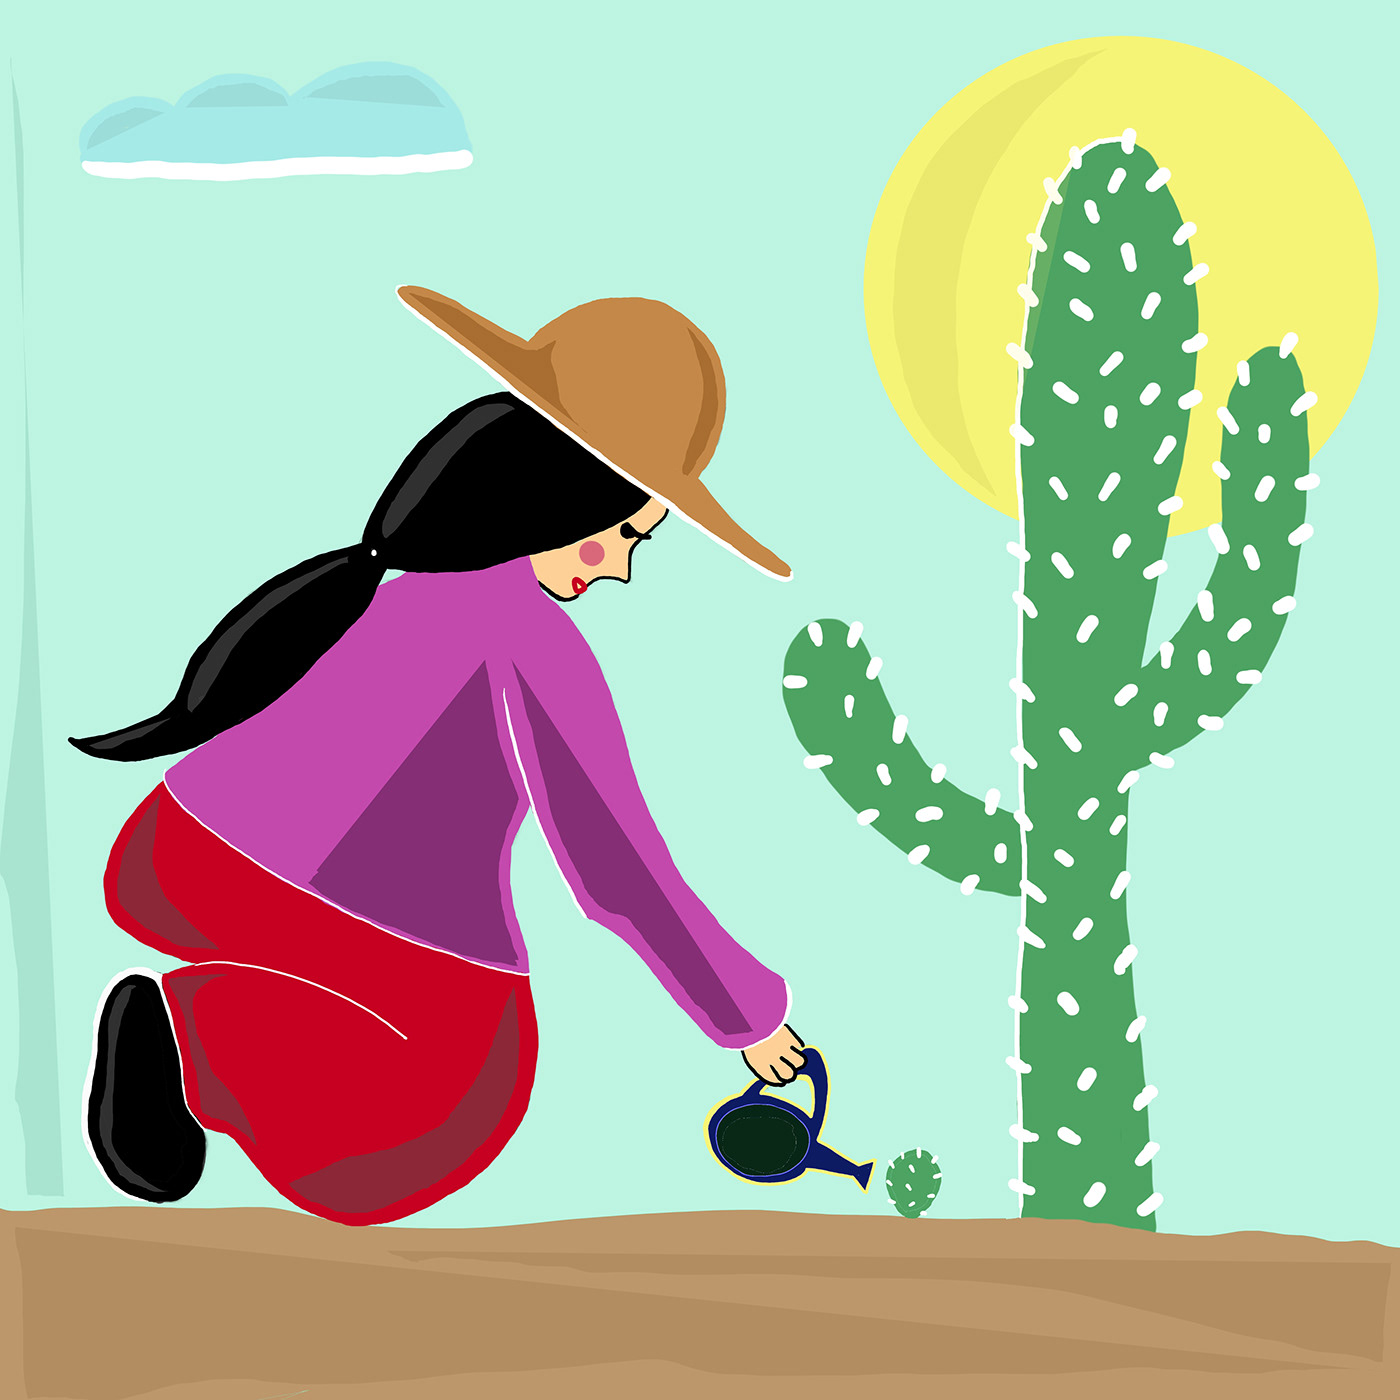 ILLUSTRATION  girl illustration illustration art cactus illustration